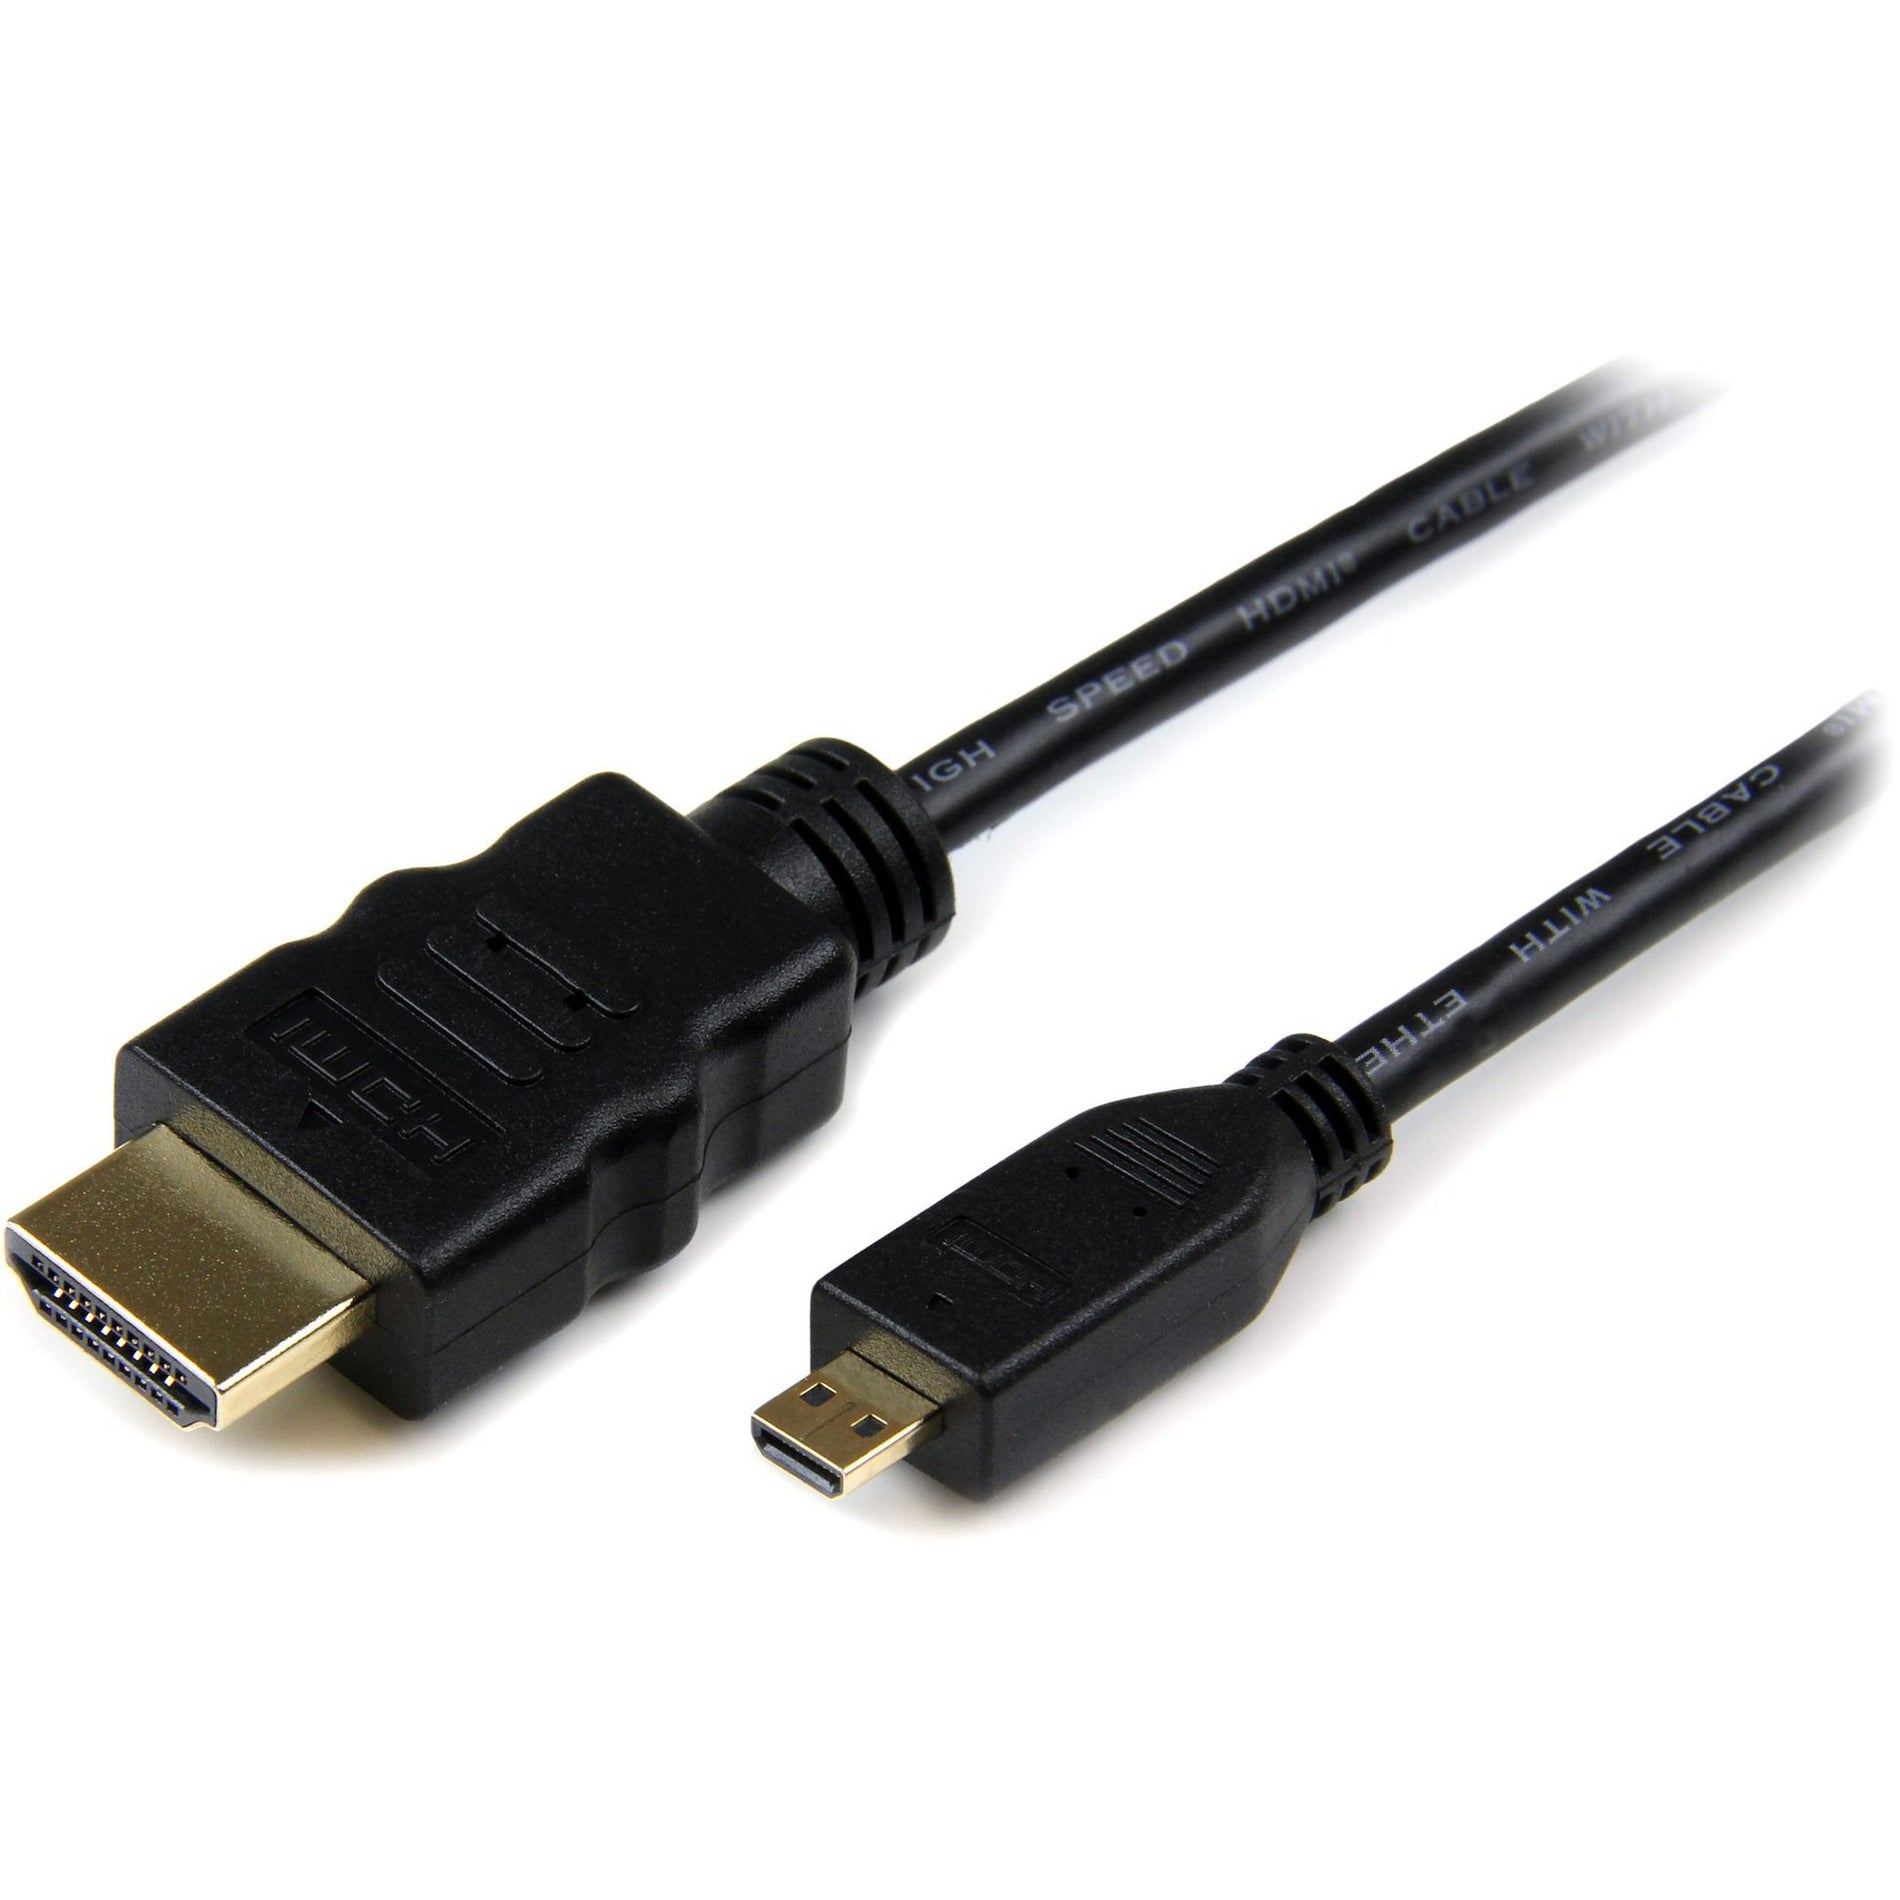 StarTech.com HDMIADMM3 3 ft High Speed HDMI-Kabel mit Ethernet - HDMI zu HDMI Micro - M/M 4K unterstützt vergoldete Stecker Schwarz